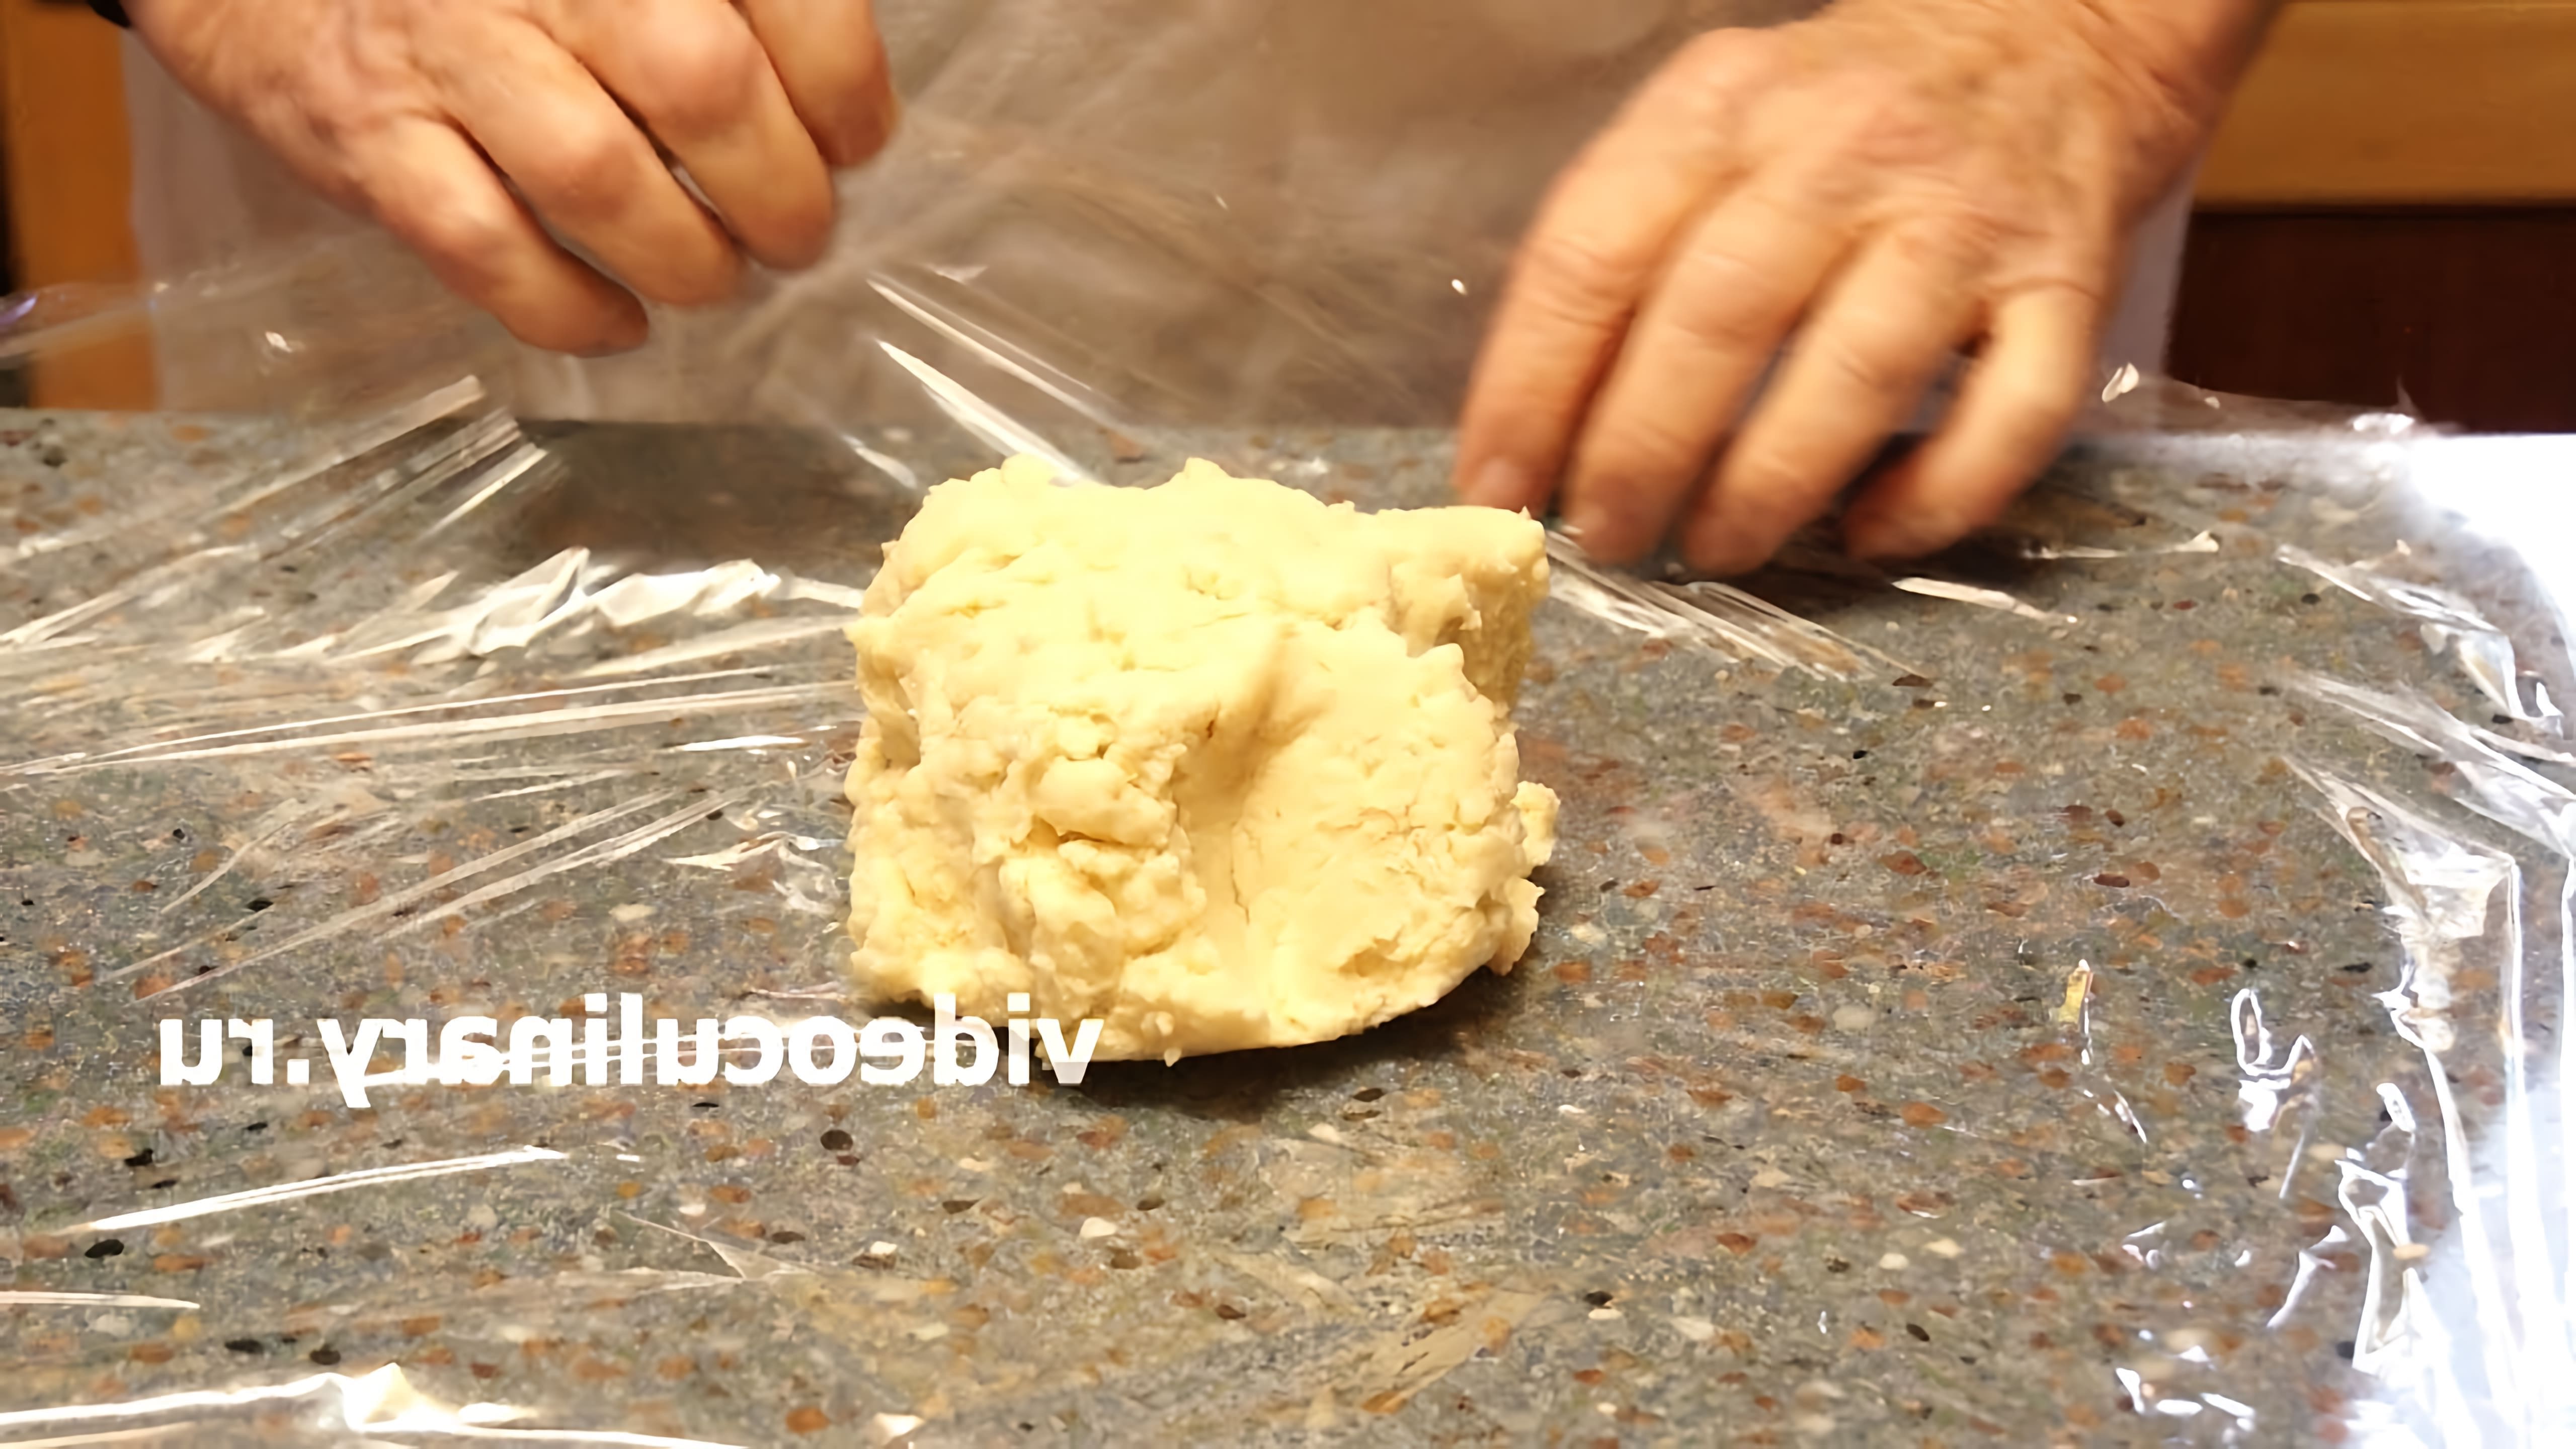 В этом видео-ролике "Песочное тесто на раз-два-три - Рецепт Бабушки Эммы" демонстрируется простой и быстрый способ приготовления песочного теста